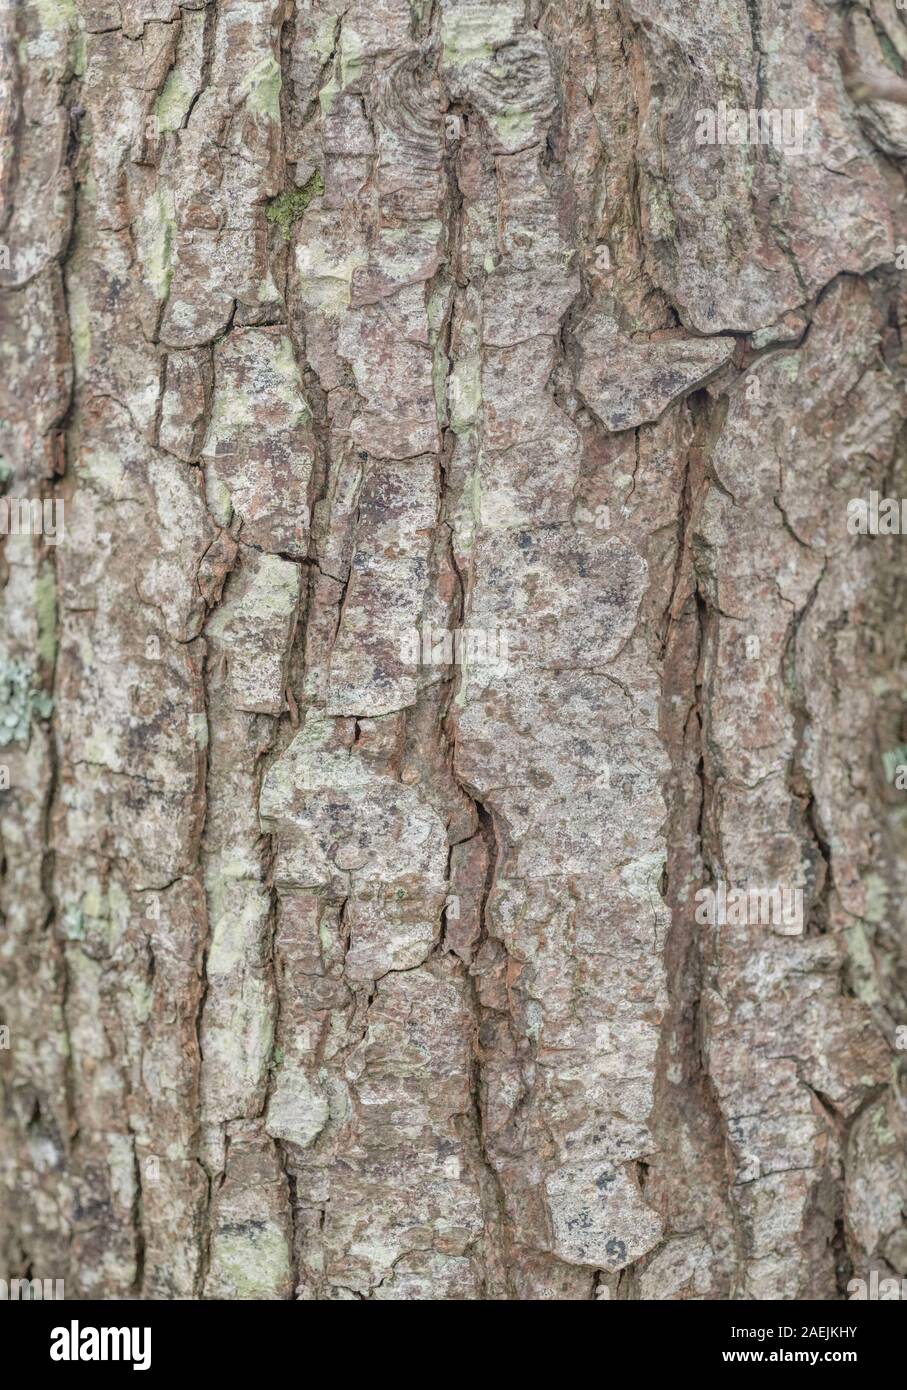 Rissige Baumrinde Textur des gemeinsamen Erle/Alnus glutinosa. Teile der Sumpf - Wohnung Wasser-liebenden Baum als Heilpflanze in pflanzliche Heilmittel verwendet Stockfoto